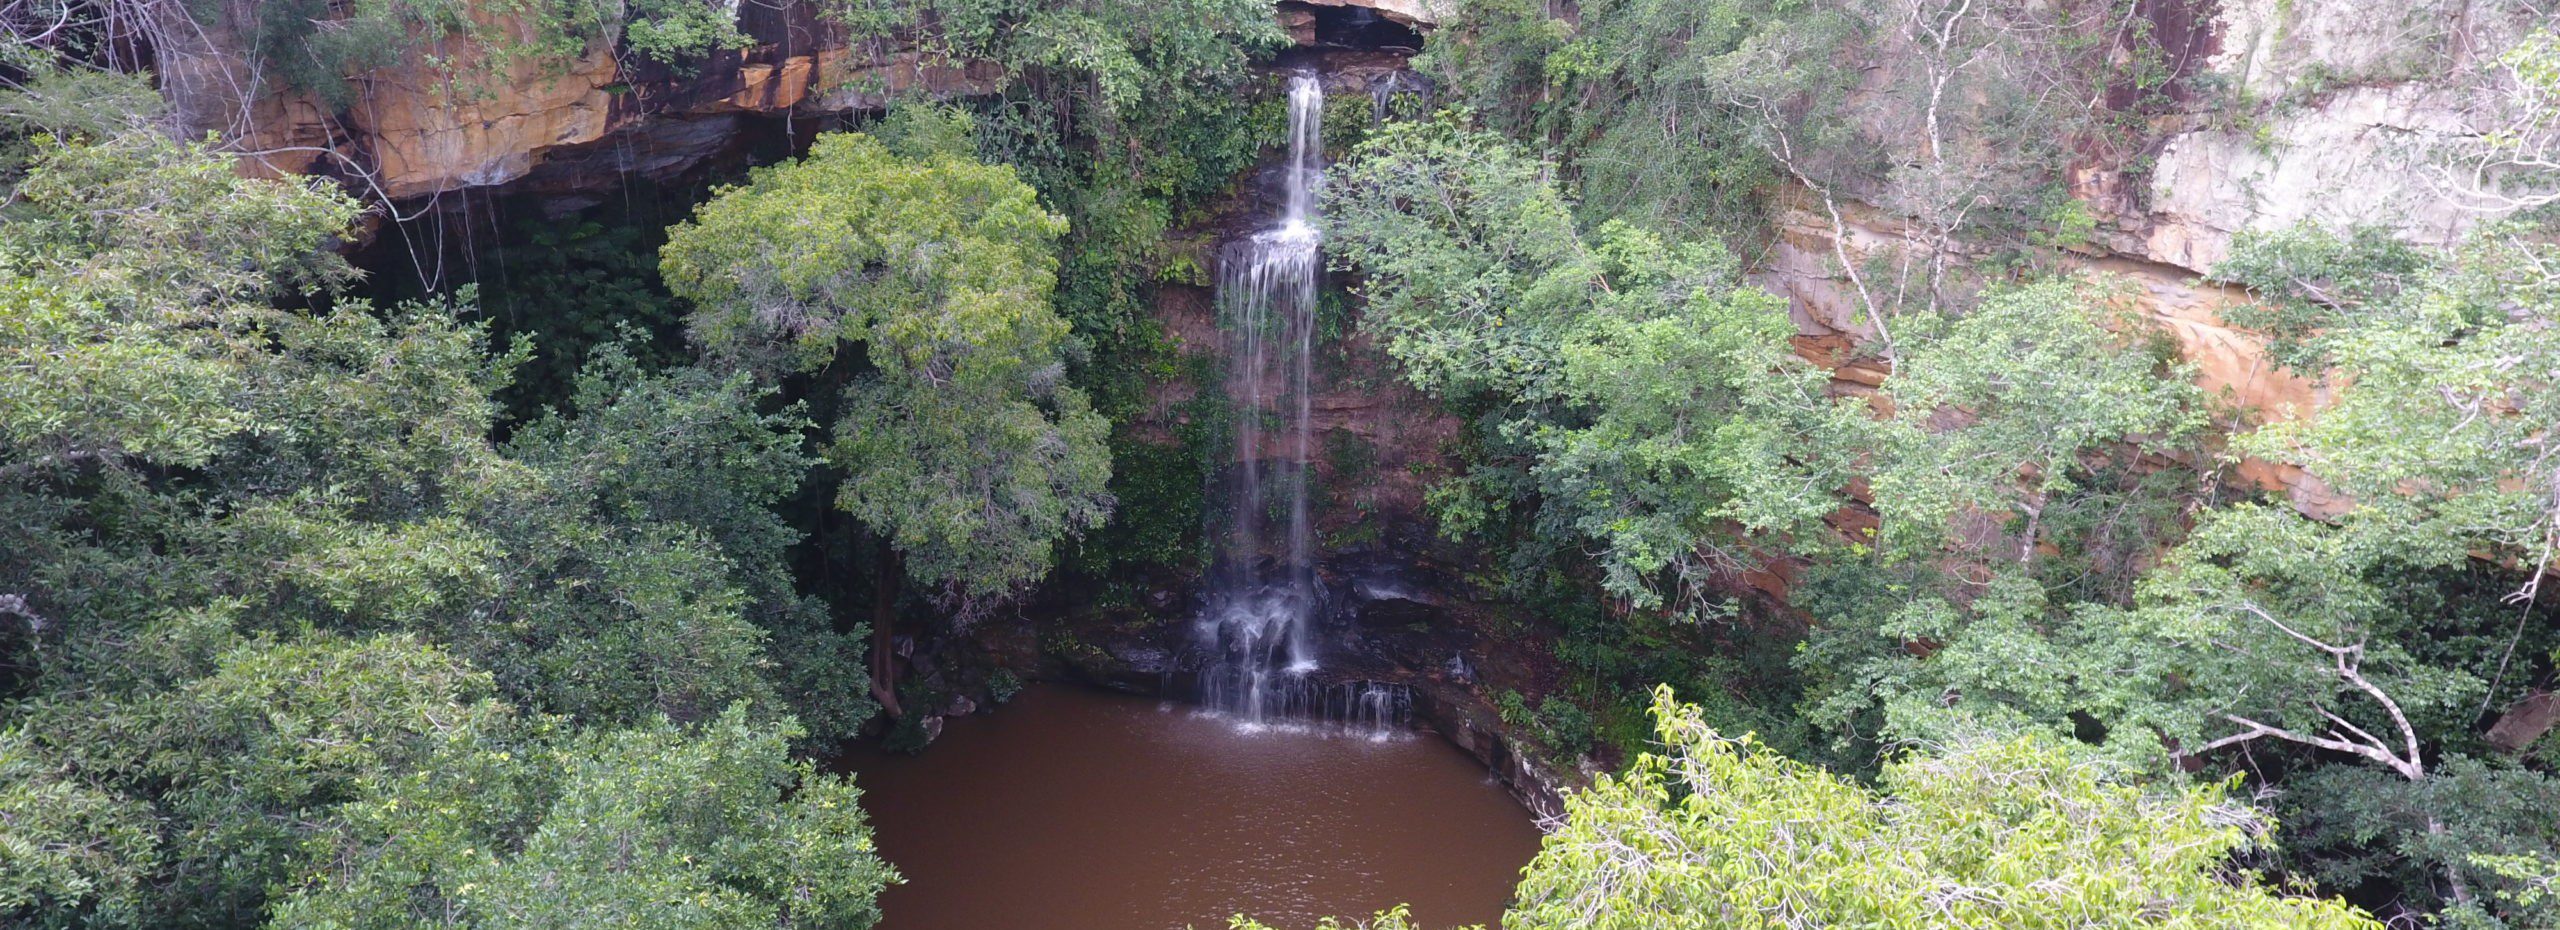 Cachoeira do Salto Liso, no piauí  pontos turísticos do Piauí